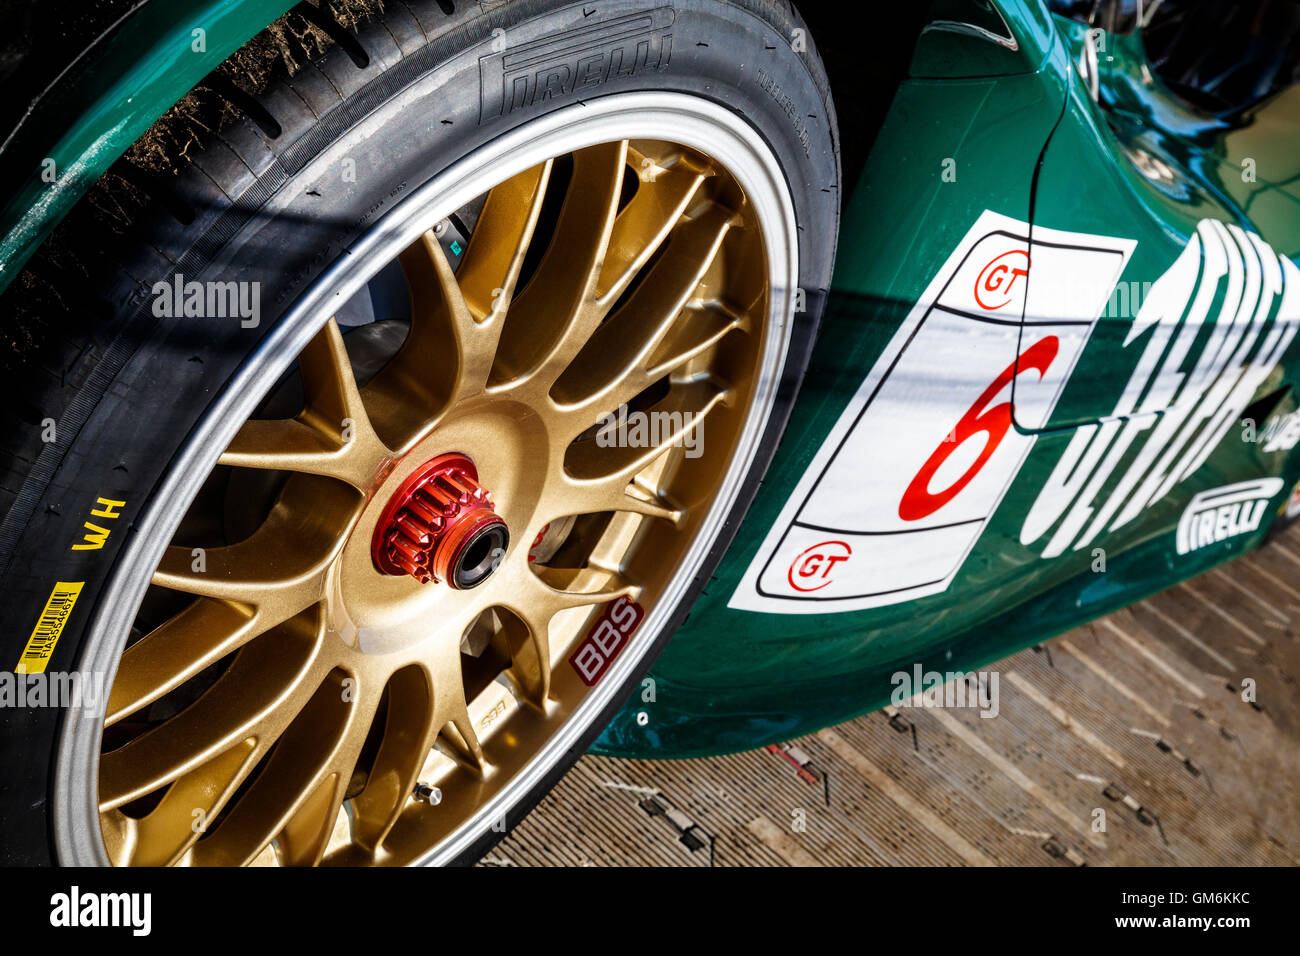 Ruota e mozzo dettaglio di Bartels e Hahne 1998 della Porsche 911 GT1-98 Le Mans racer. 2016 Goodwood Festival of Speed, Sussex, Regno Unito. Foto Stock